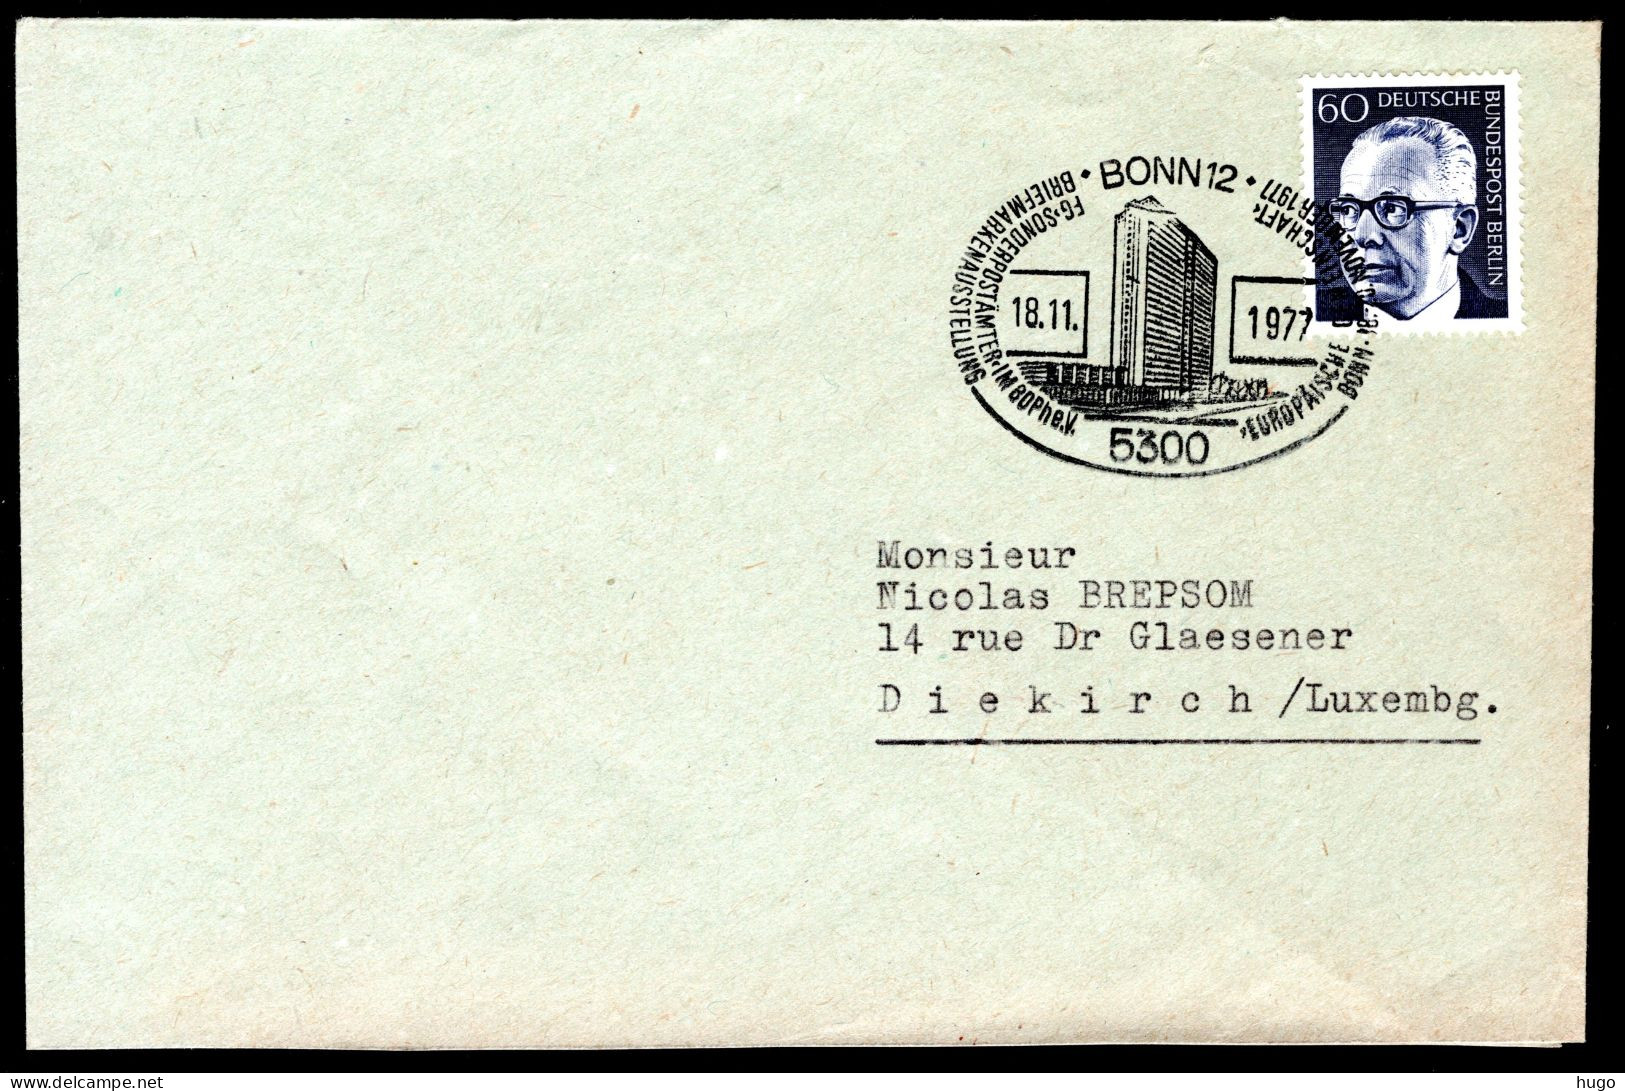 DUITSLAND Briefmarkenausstellung 18-11-1977 BONN - Covers & Documents